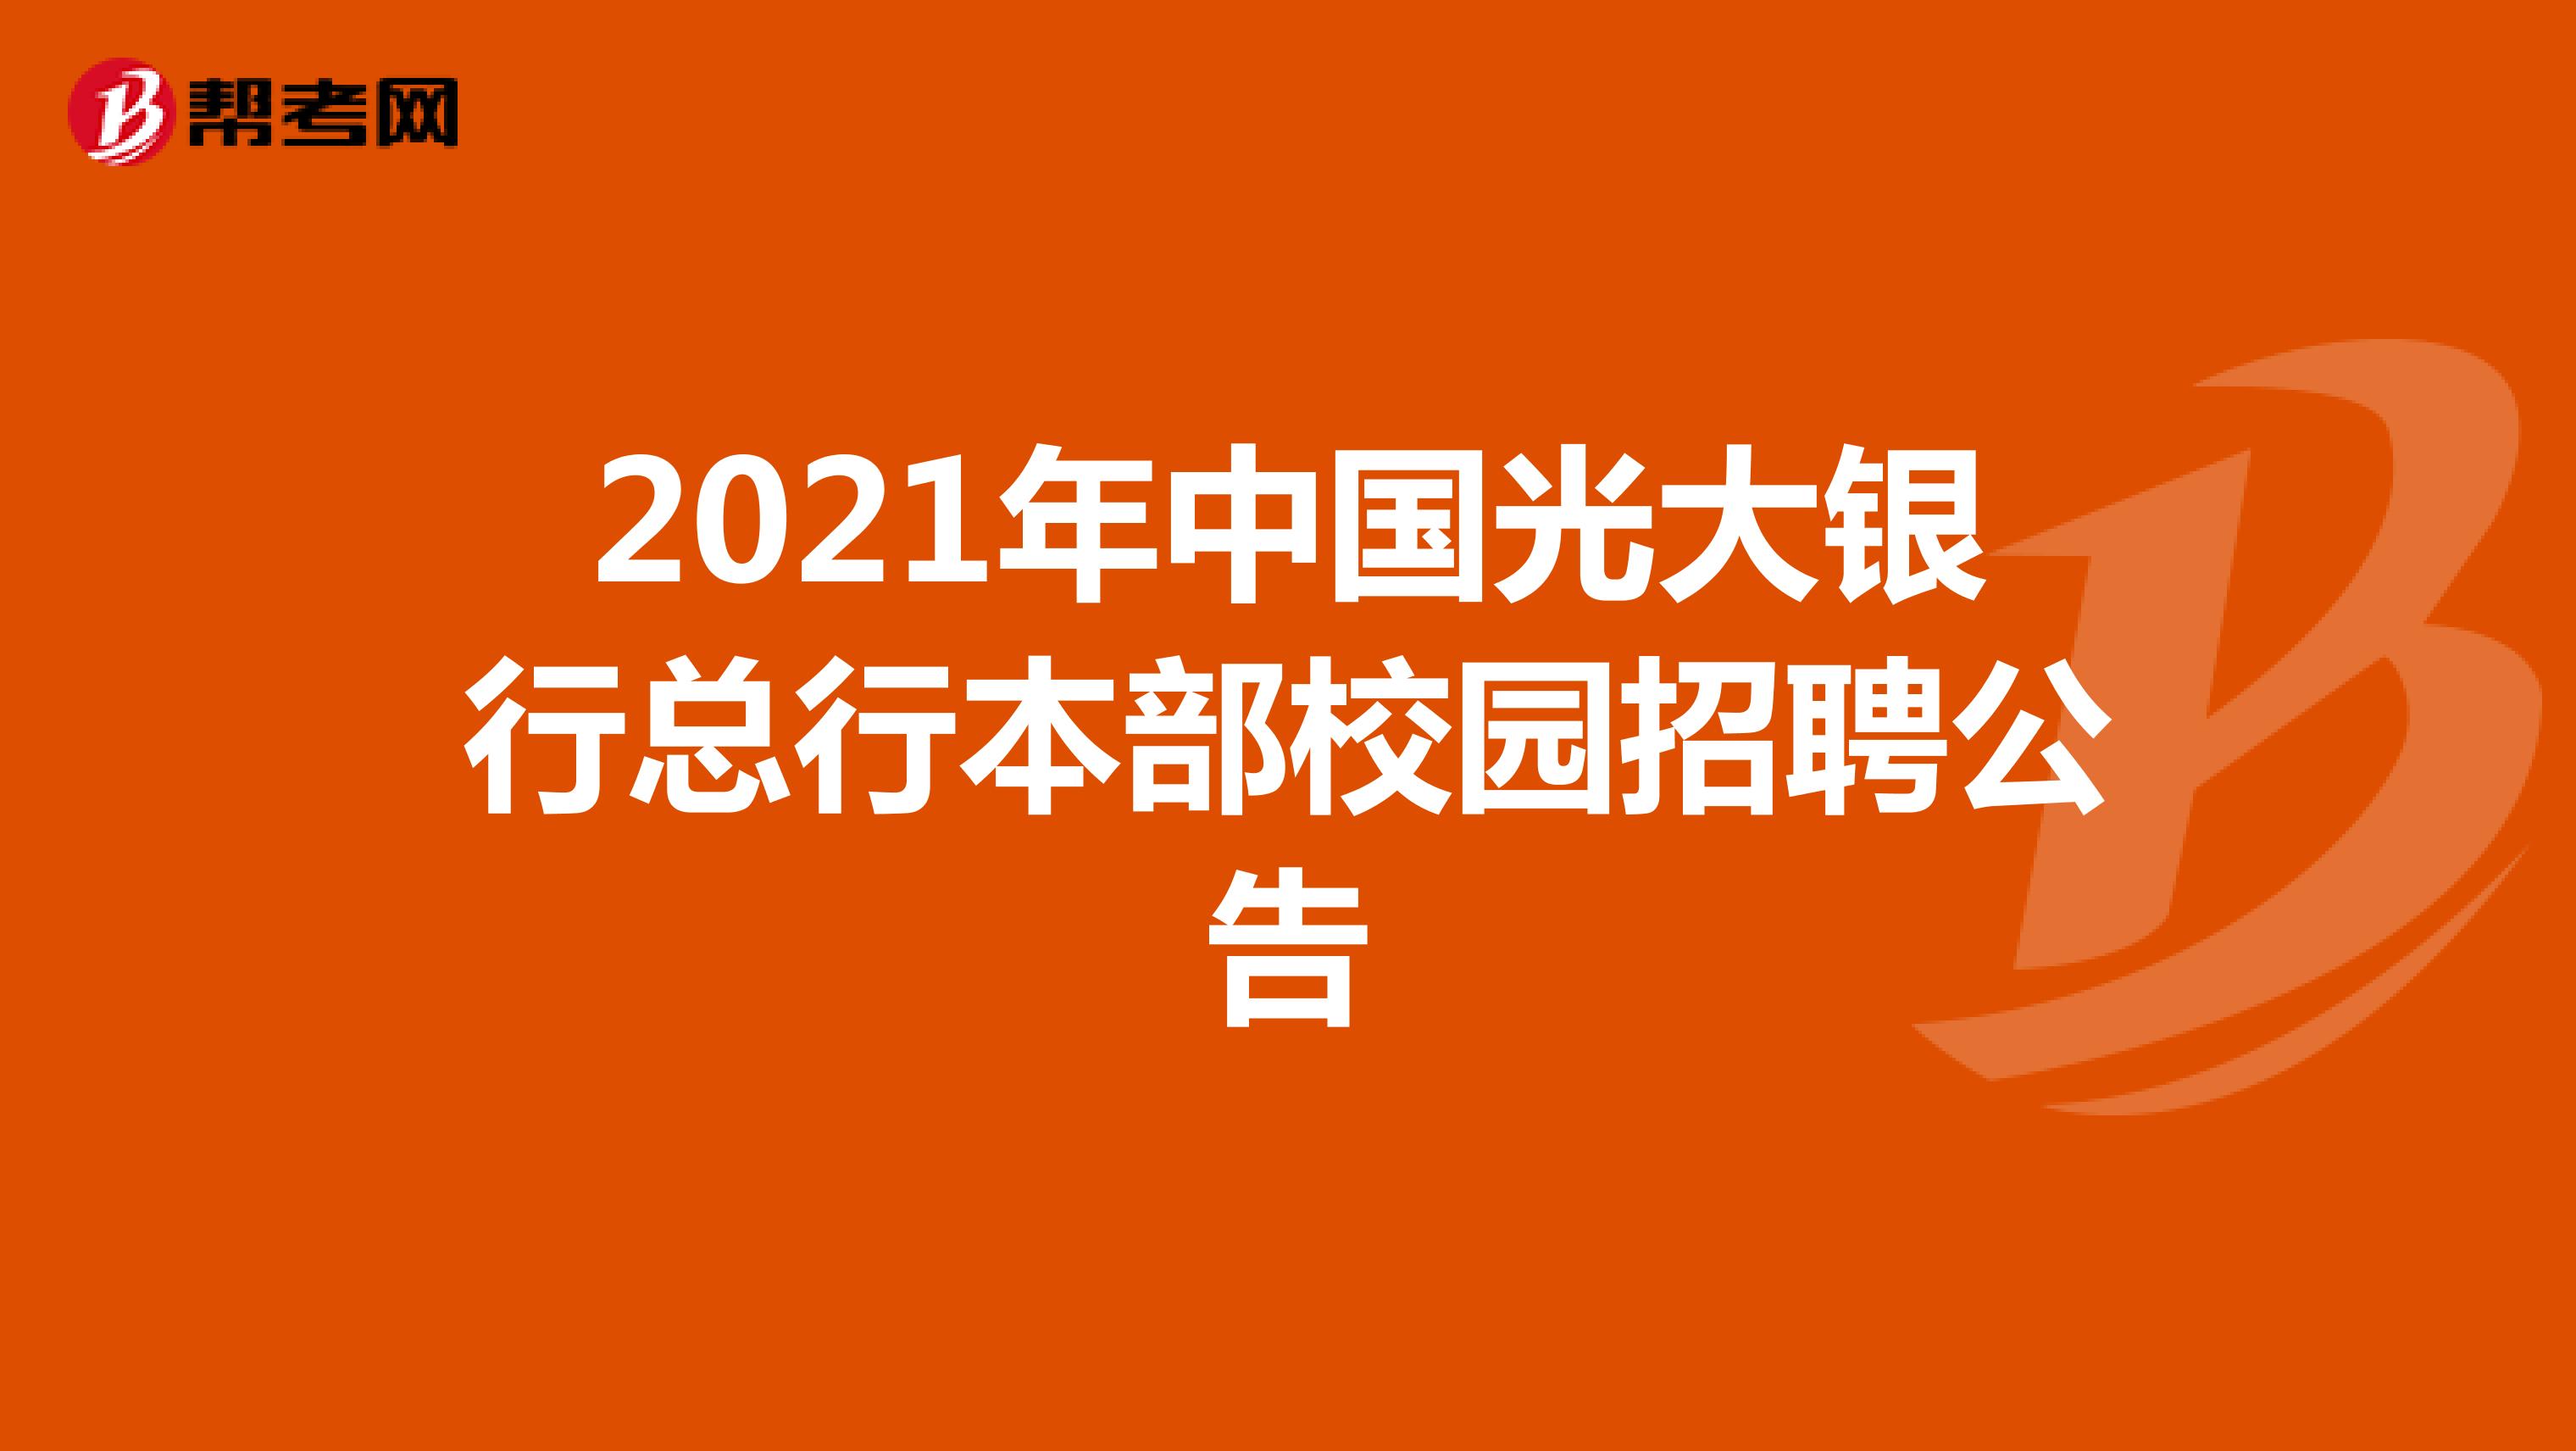 2021年中国光大银行总行本部校园招聘公告